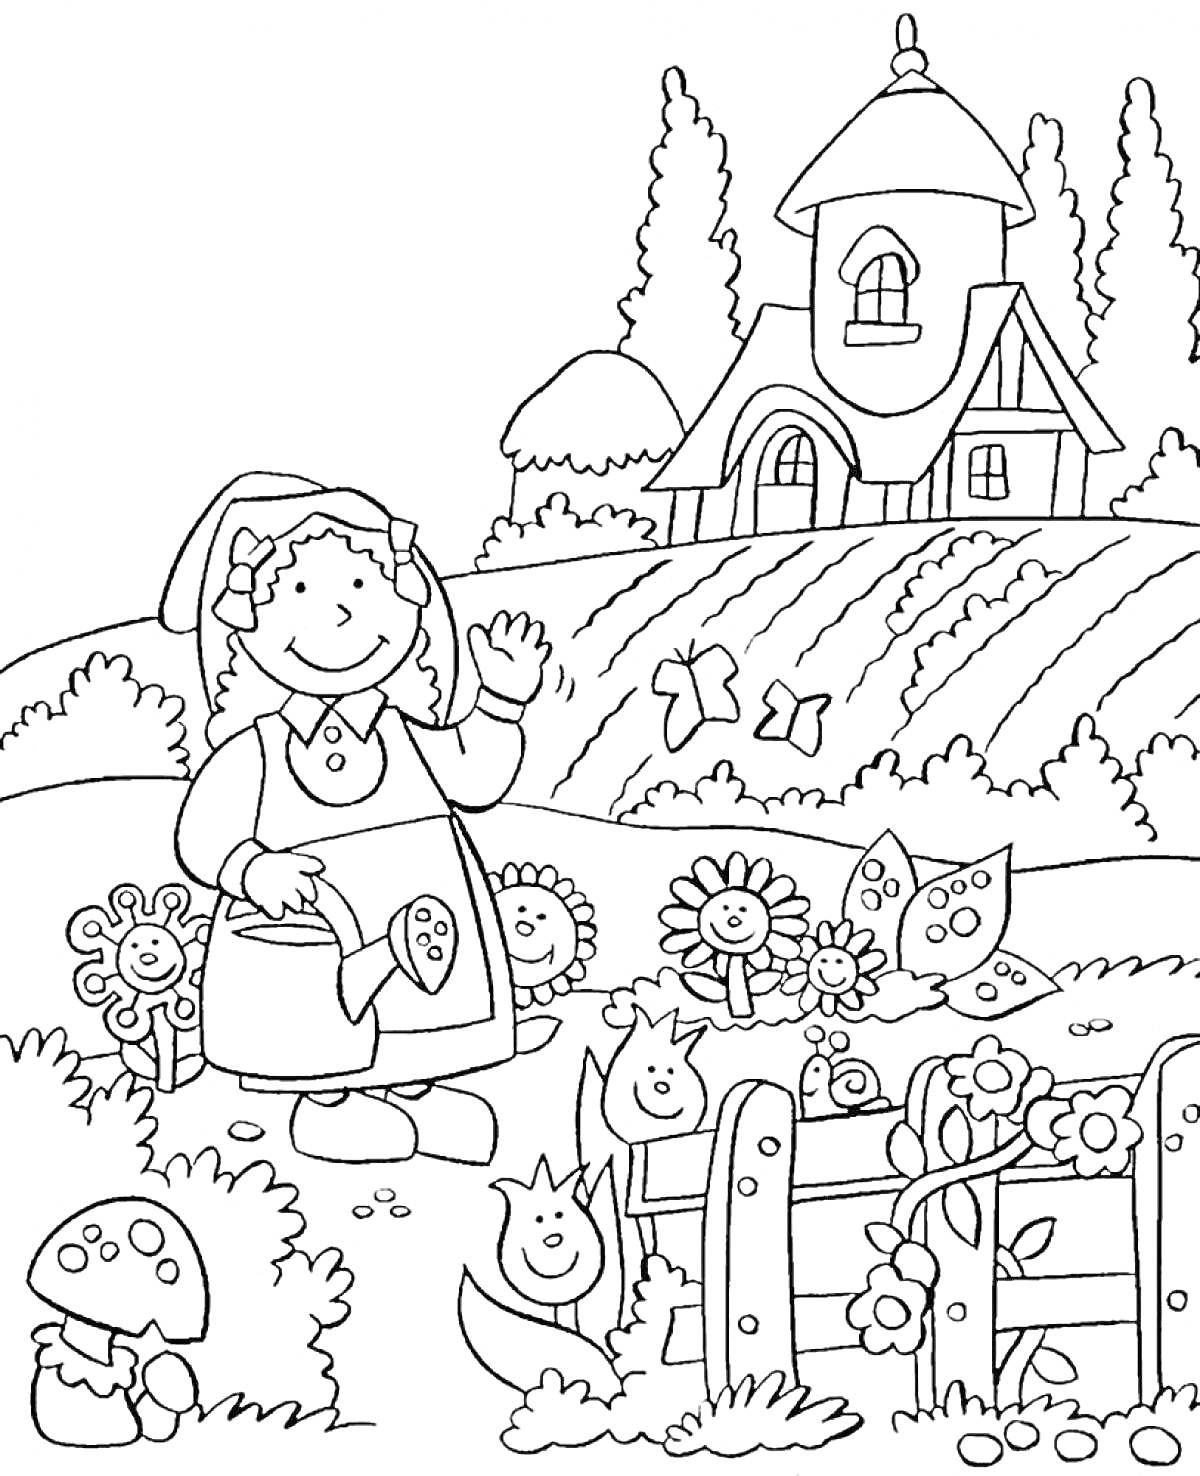 Раскраска Девочка с лейкой в огороде перед домом, цветы, грибы, бабочки и забор